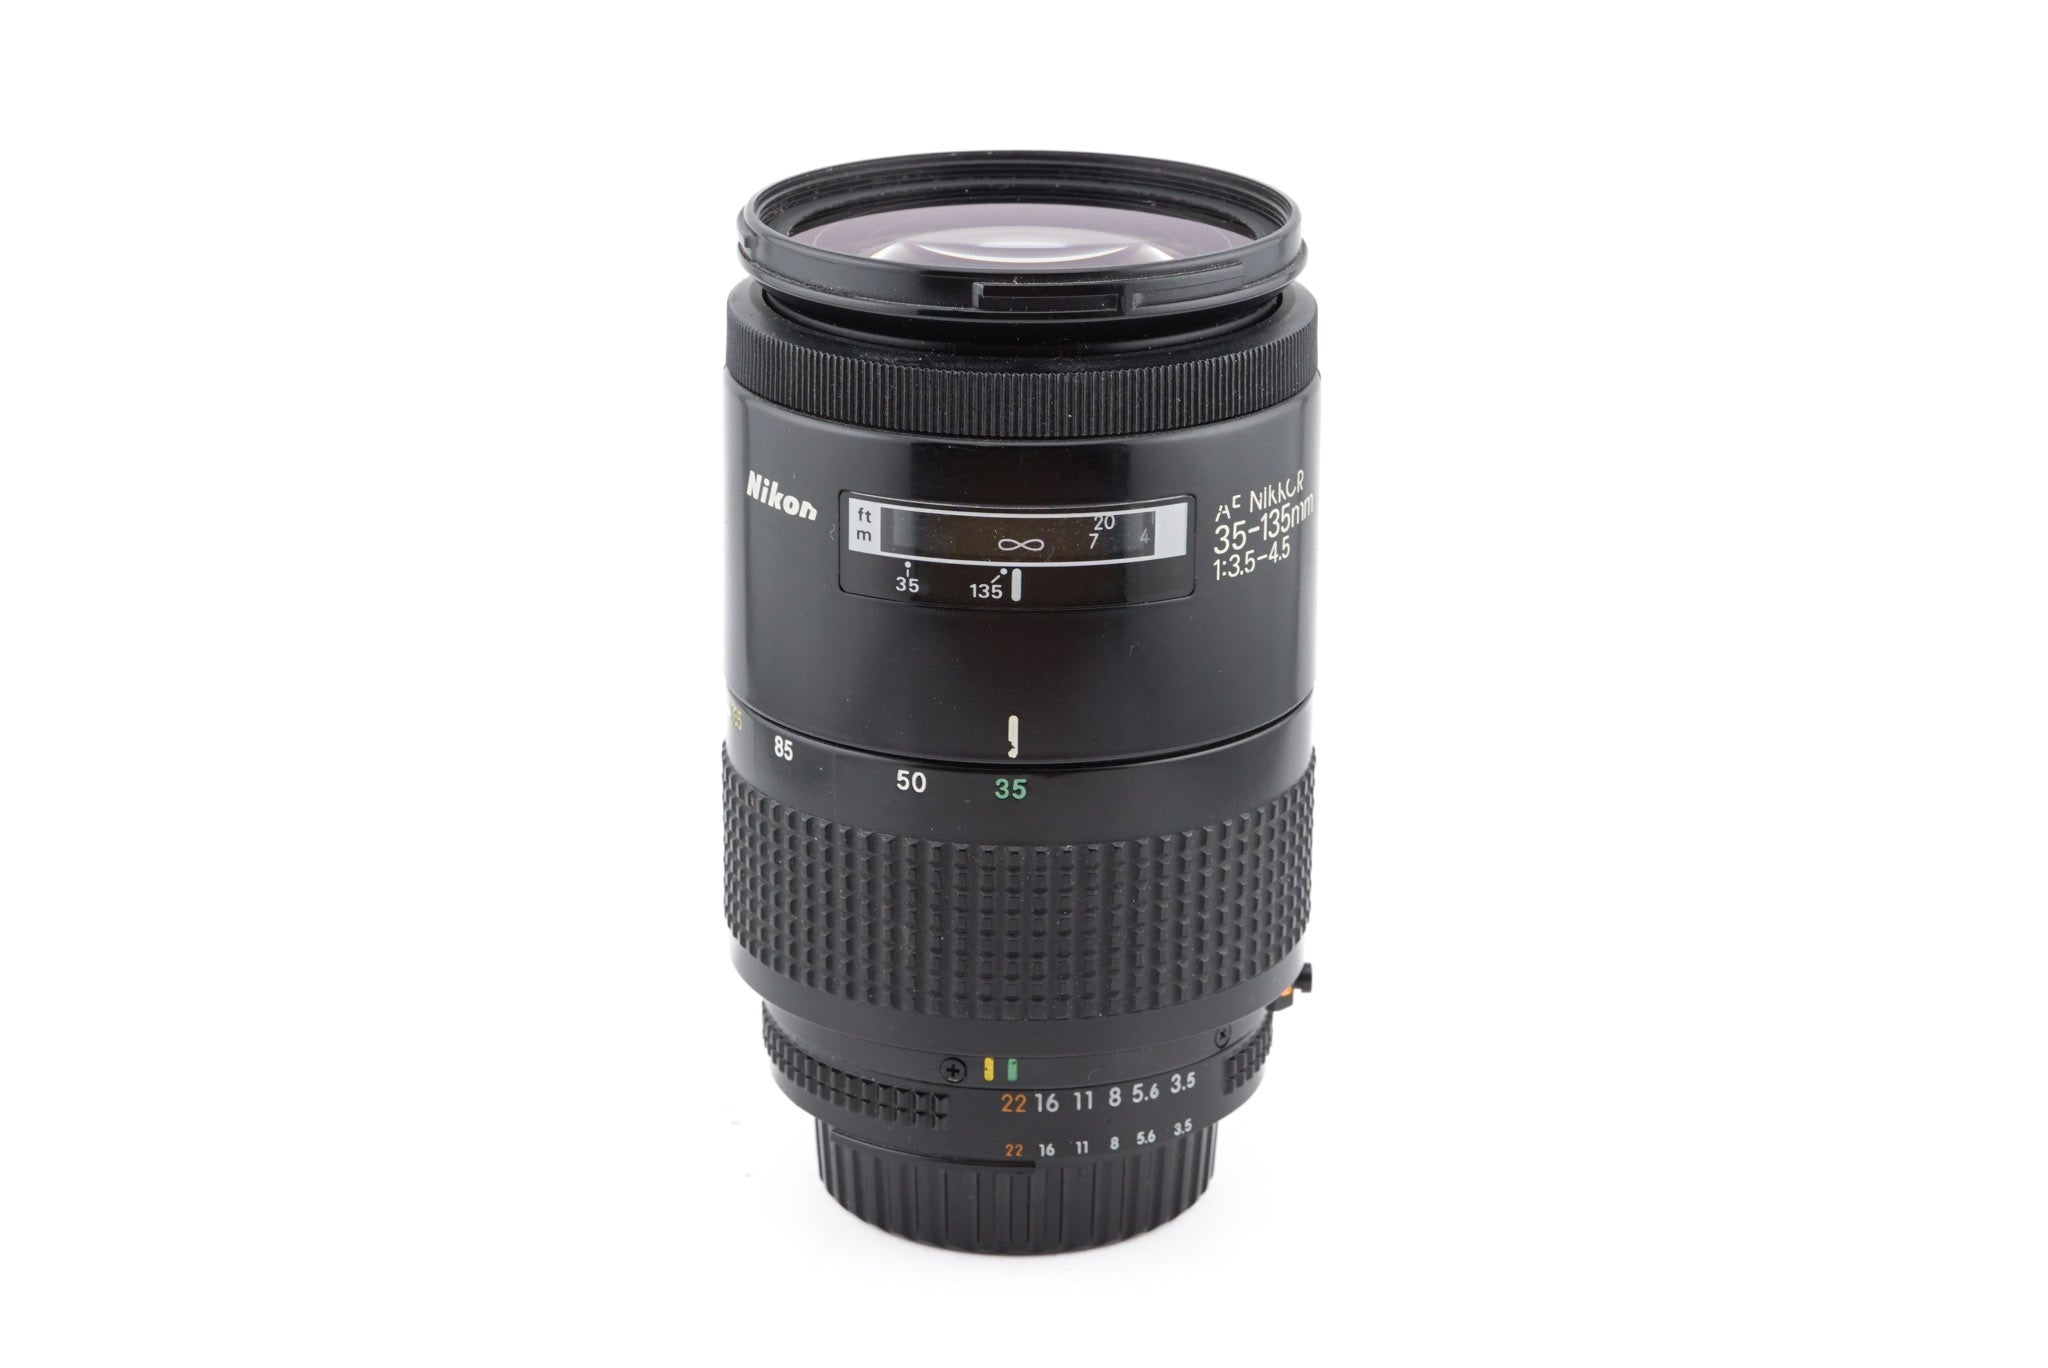 Nikon 35-135mm f3.5-4.5 AF Nikkor - Lens